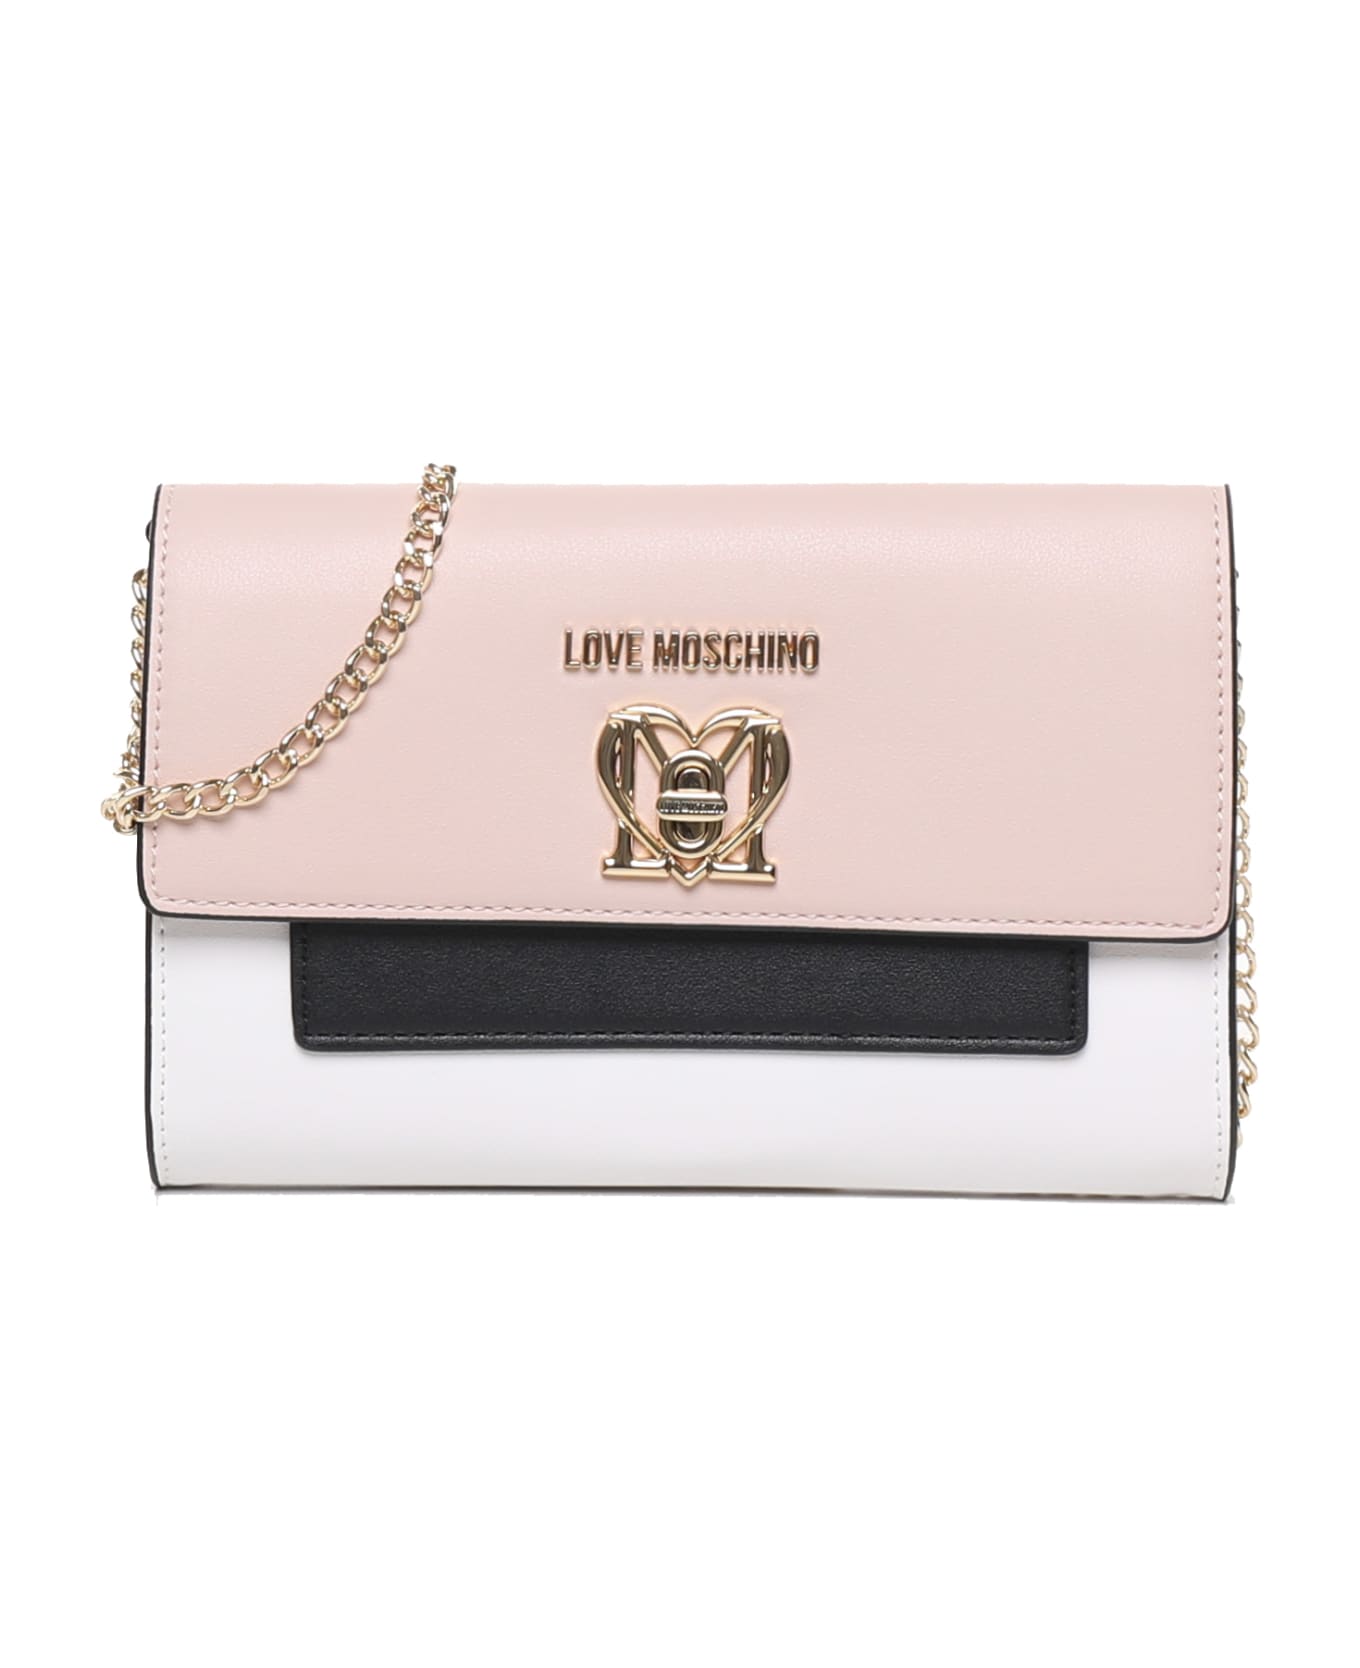 Love Moschino Rectangular Love Bag - White, pink, black